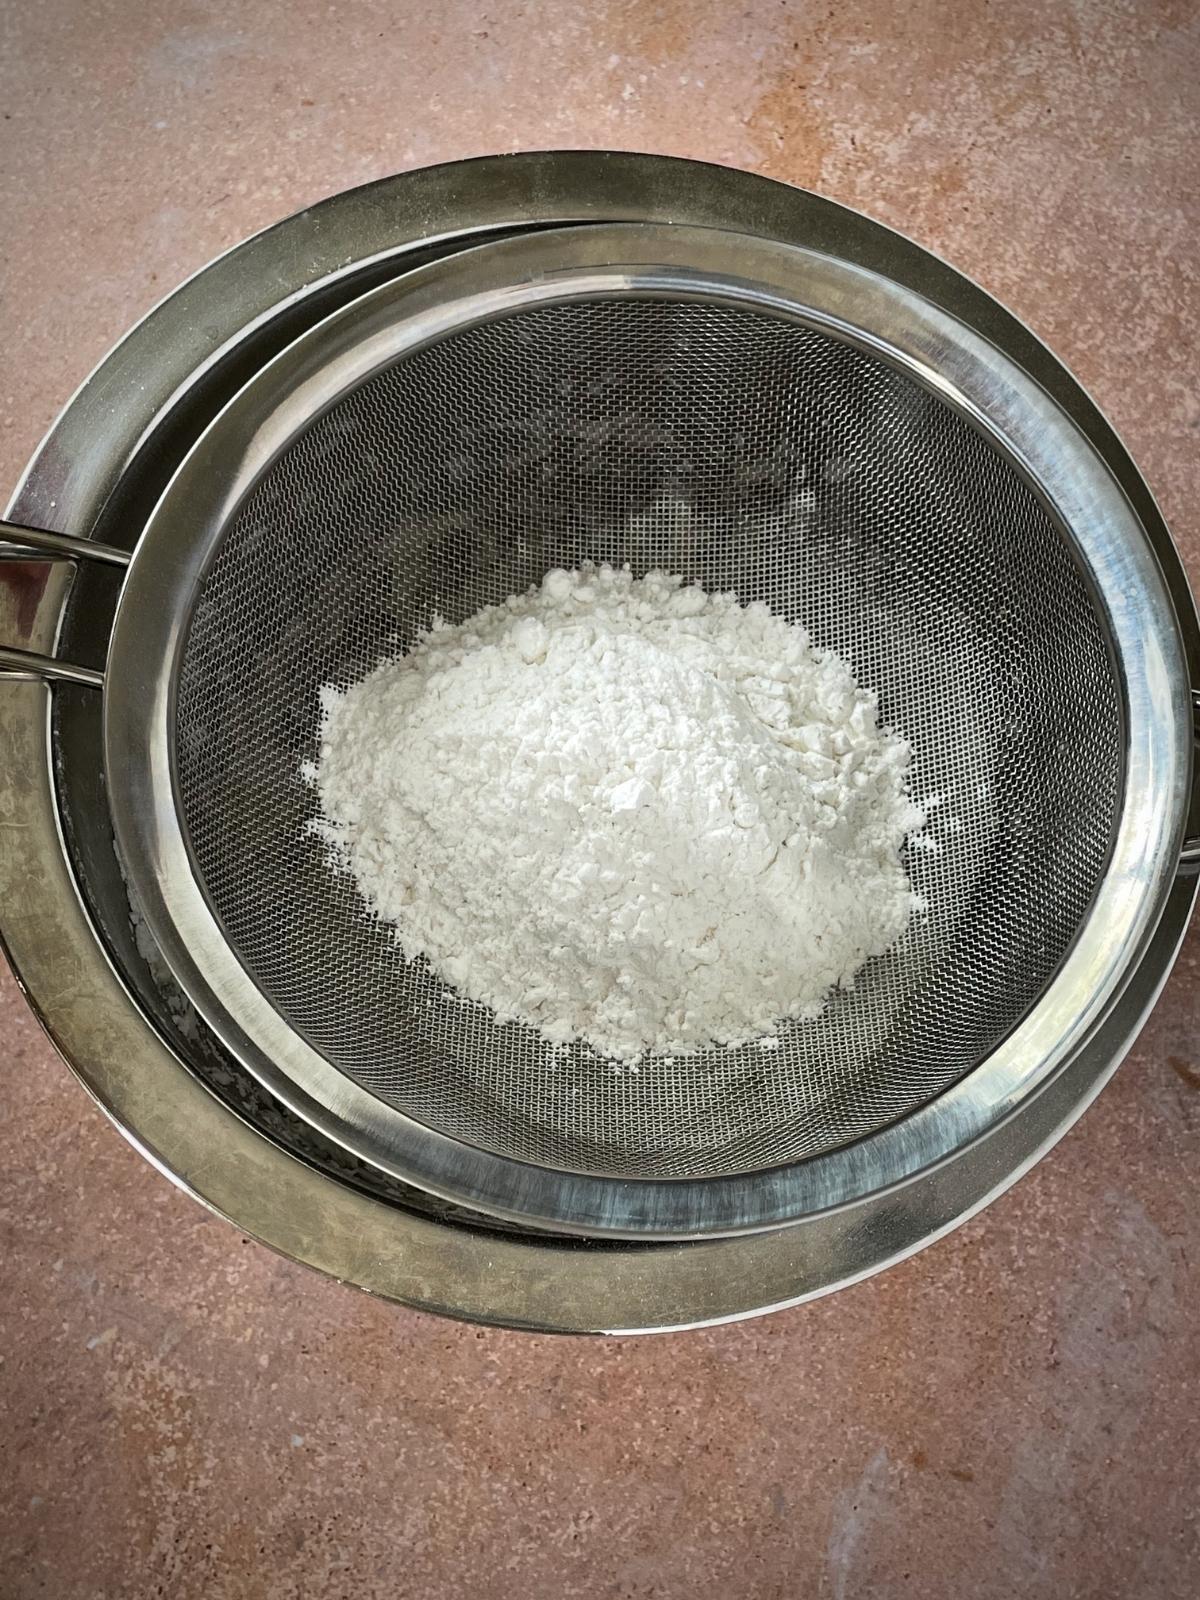 Sifting powdered sugar.